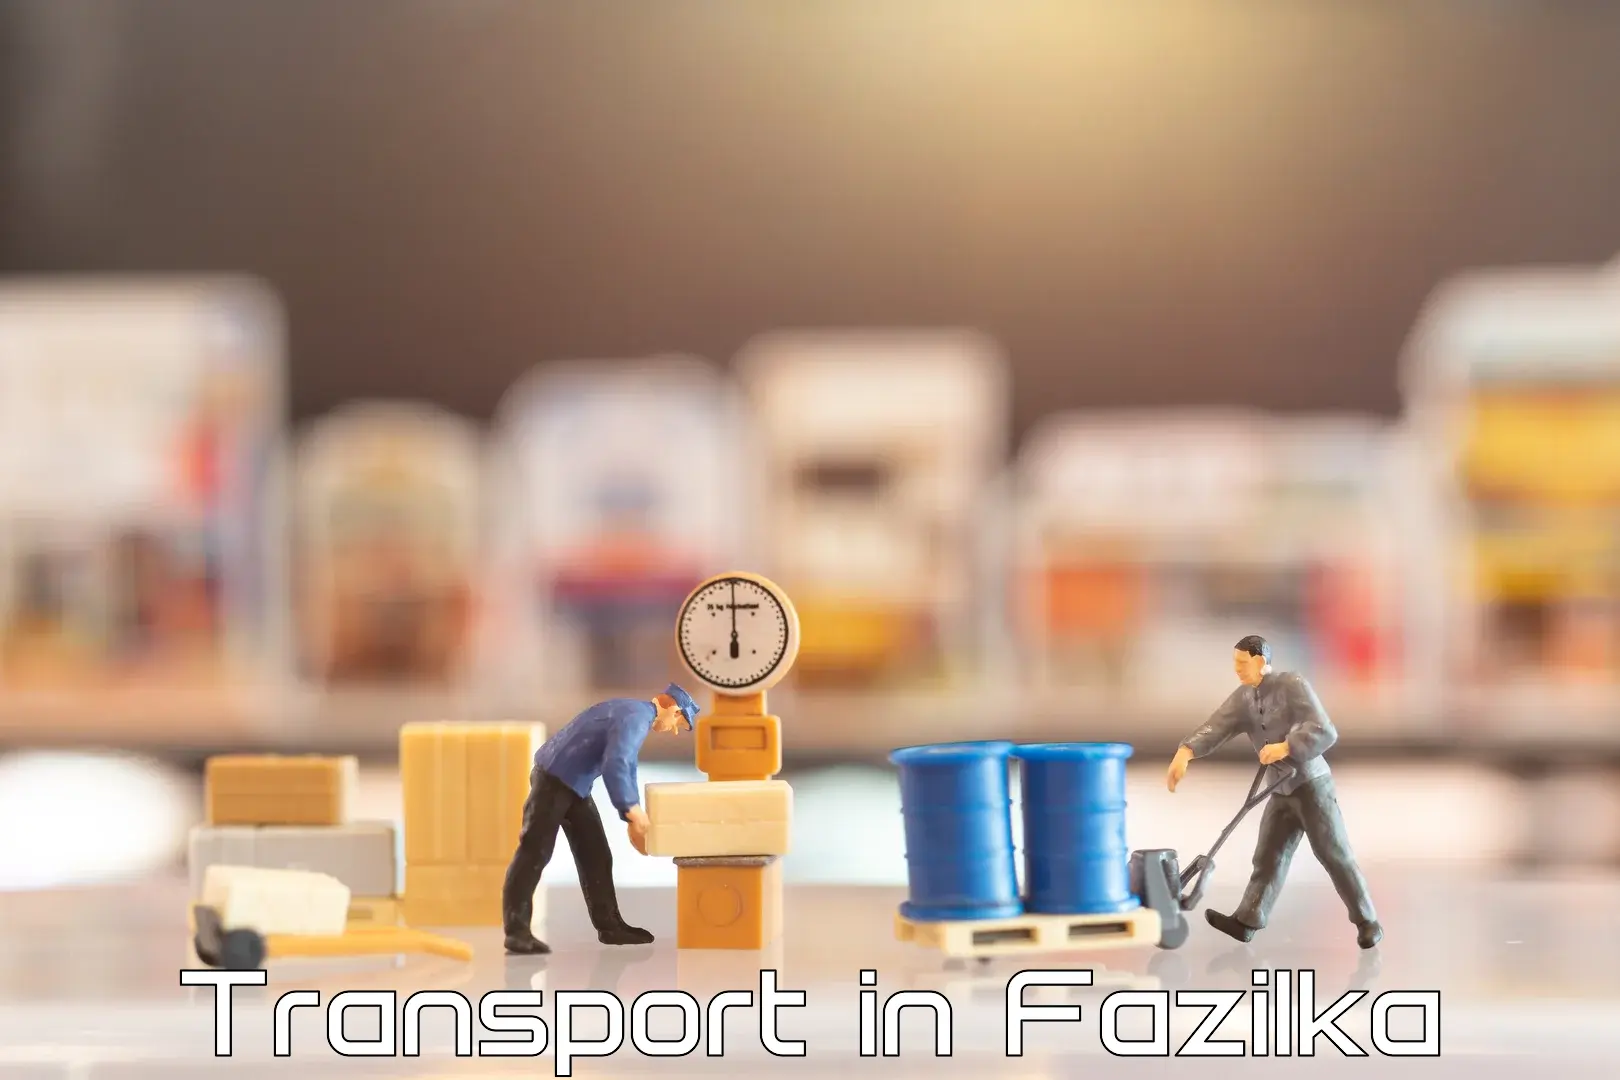 Nearby transport service in Fazilka